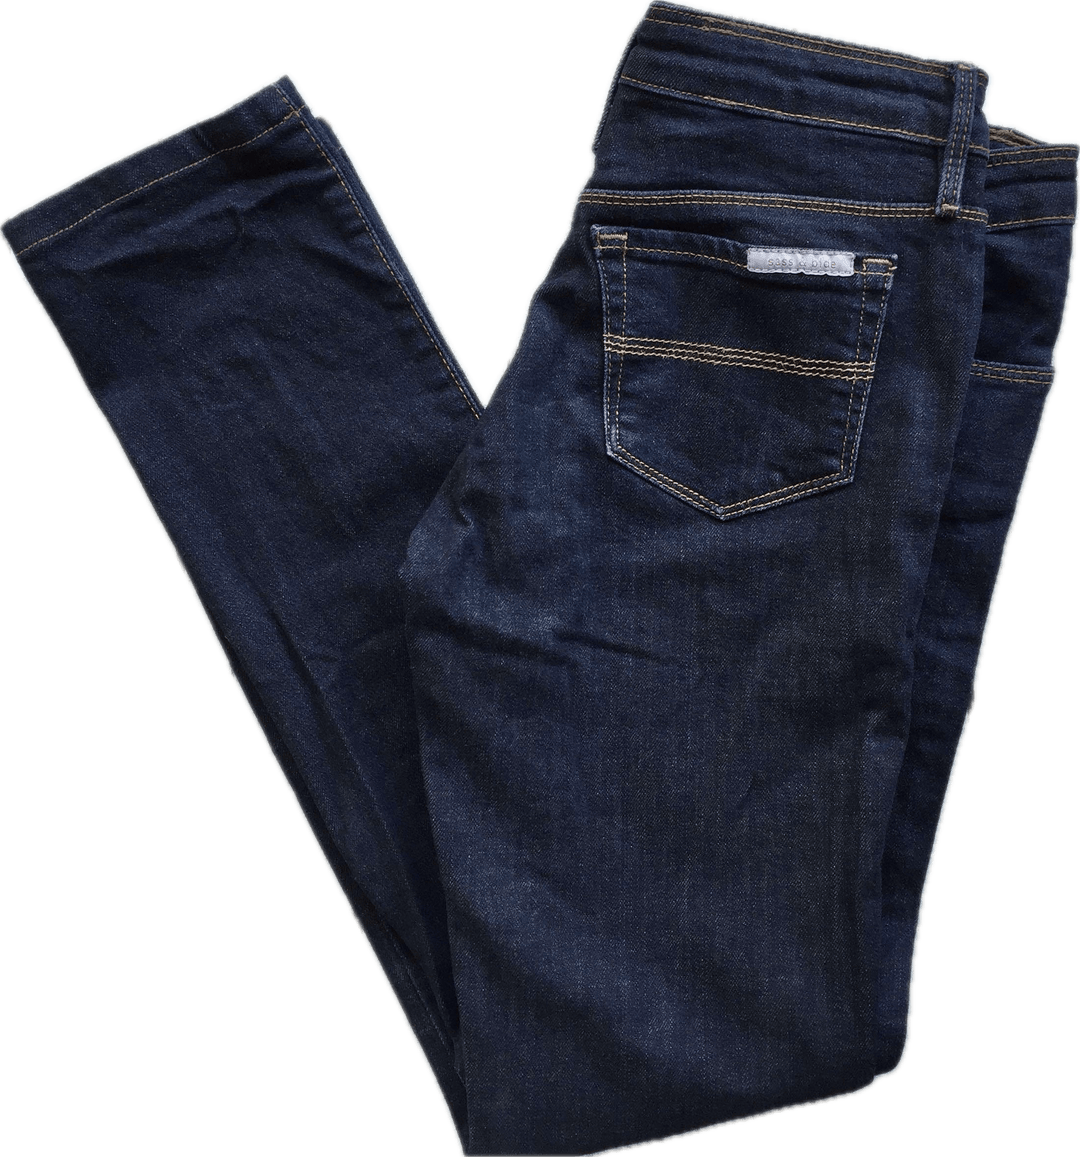 Sass & Bide Skinny Stretch Jeans -Size 27 - Jean Pool